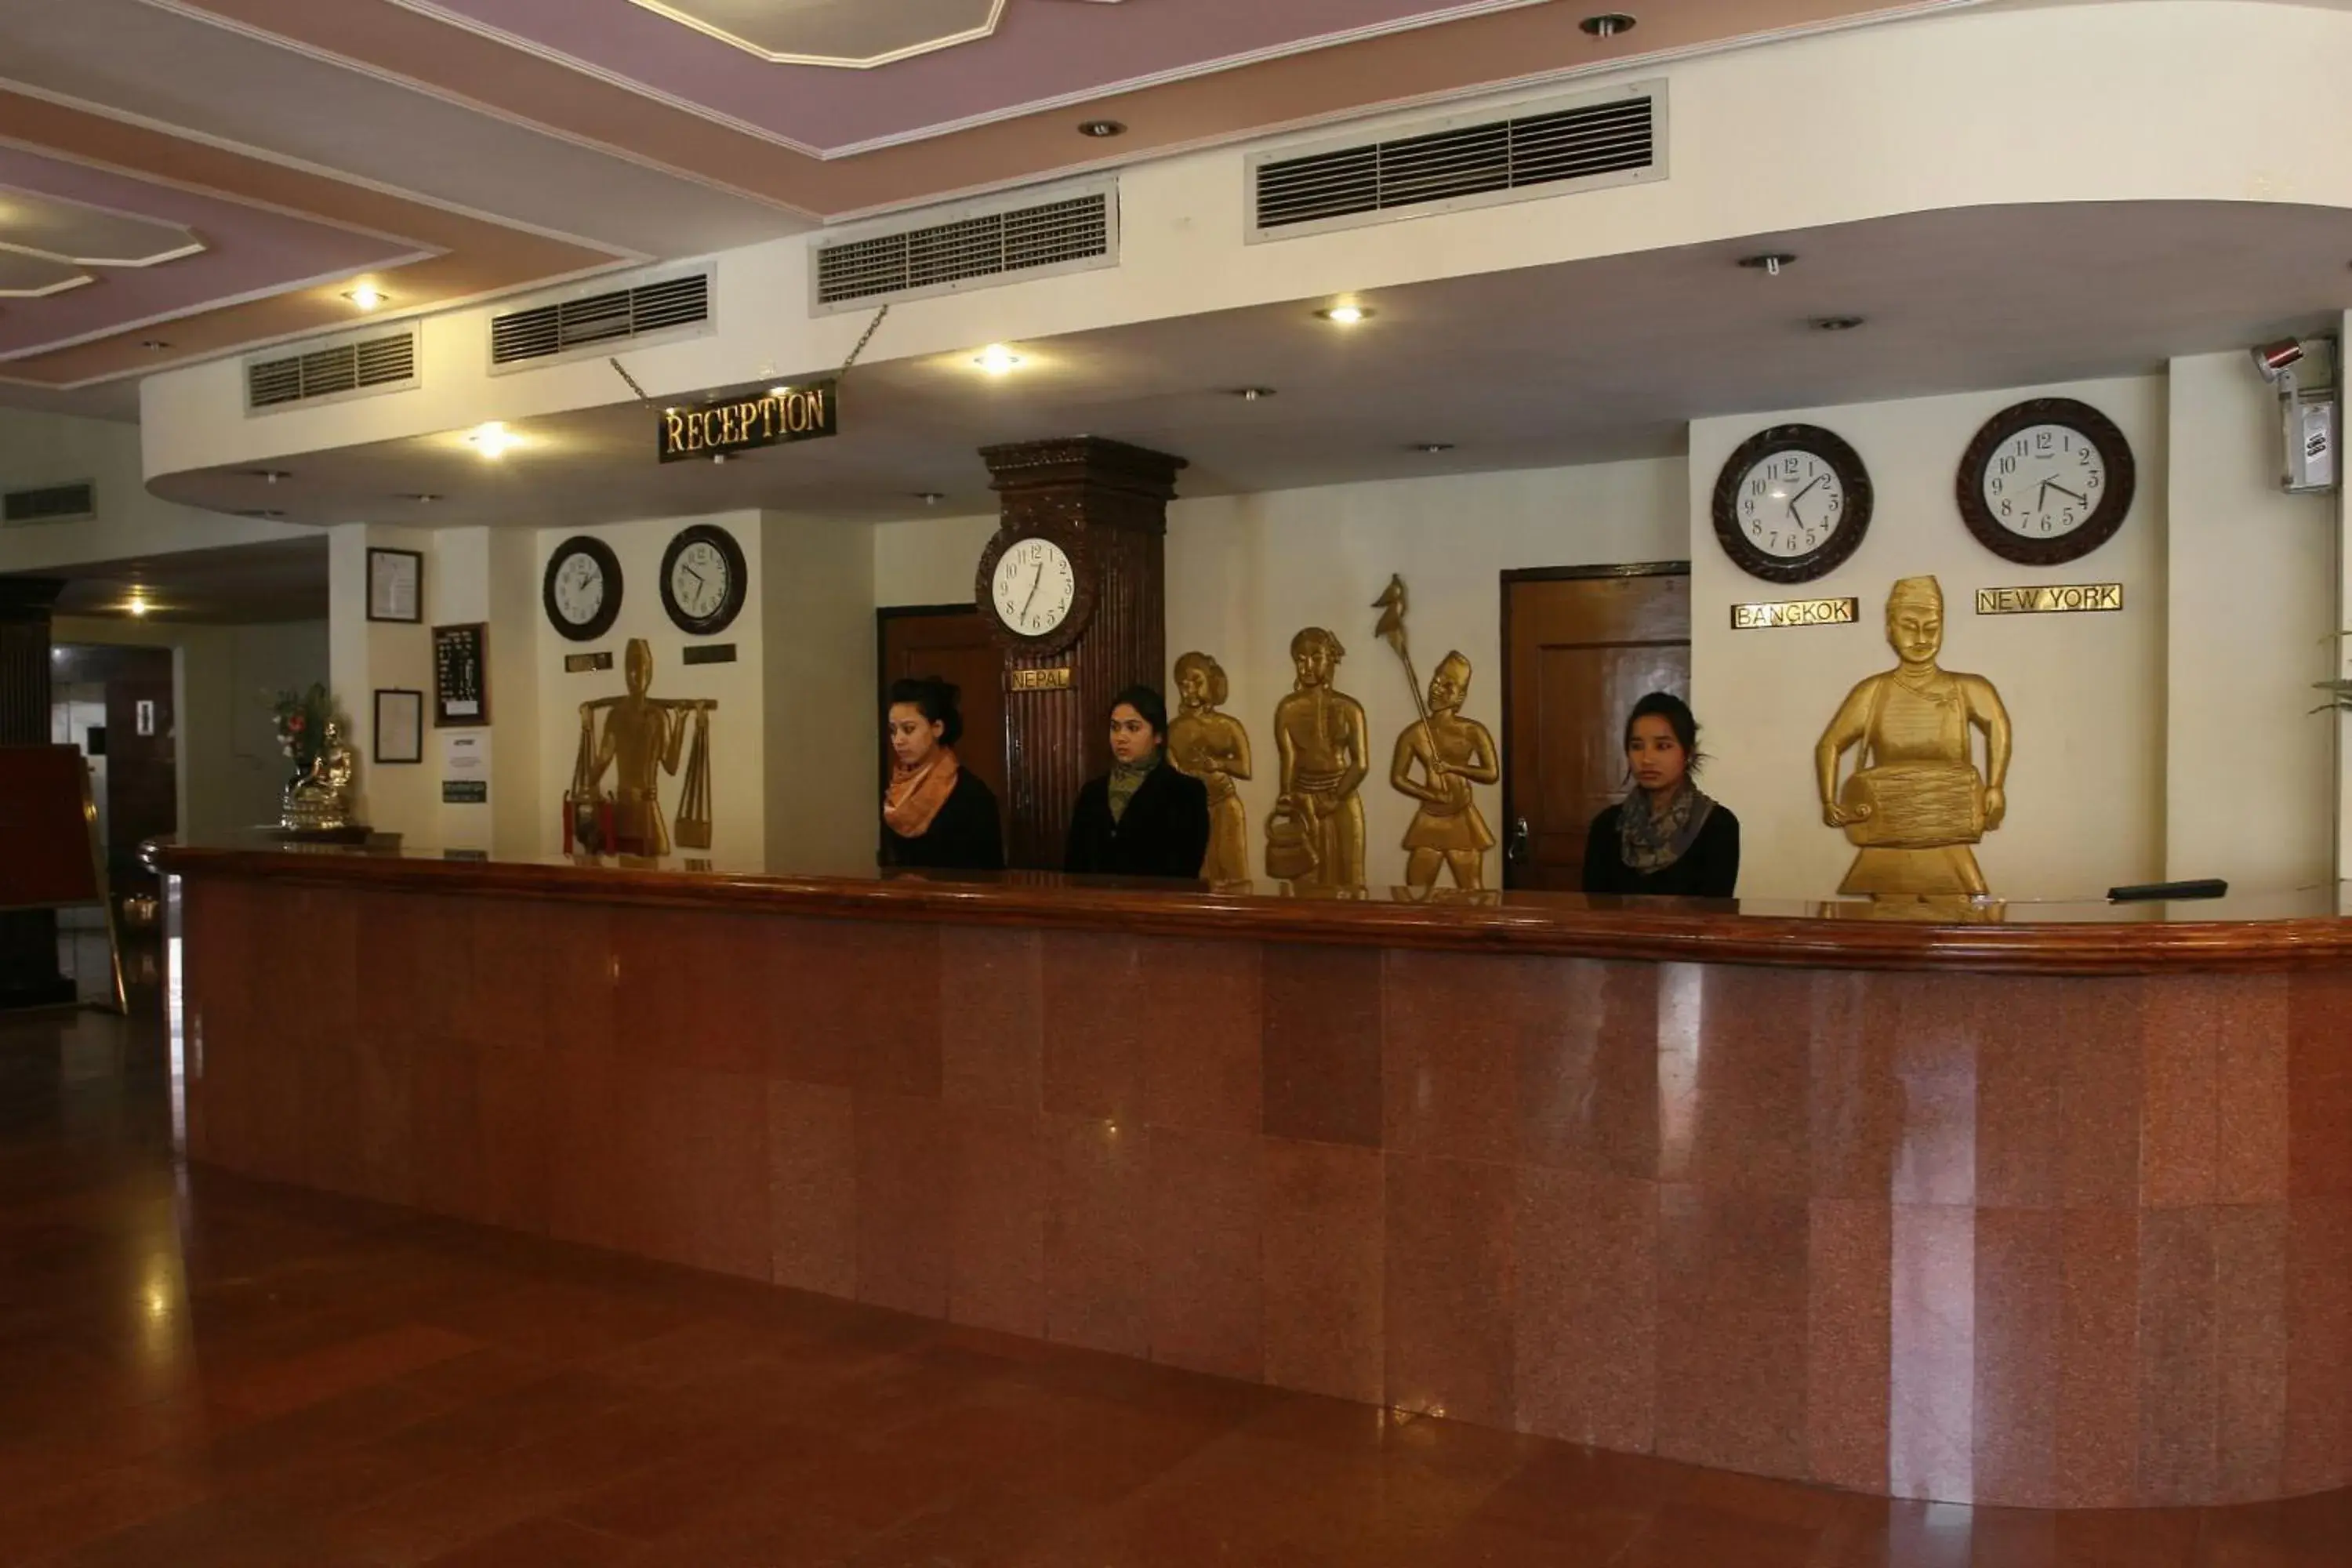 Lobby or reception, Lobby/Reception in Hotel Vaishali